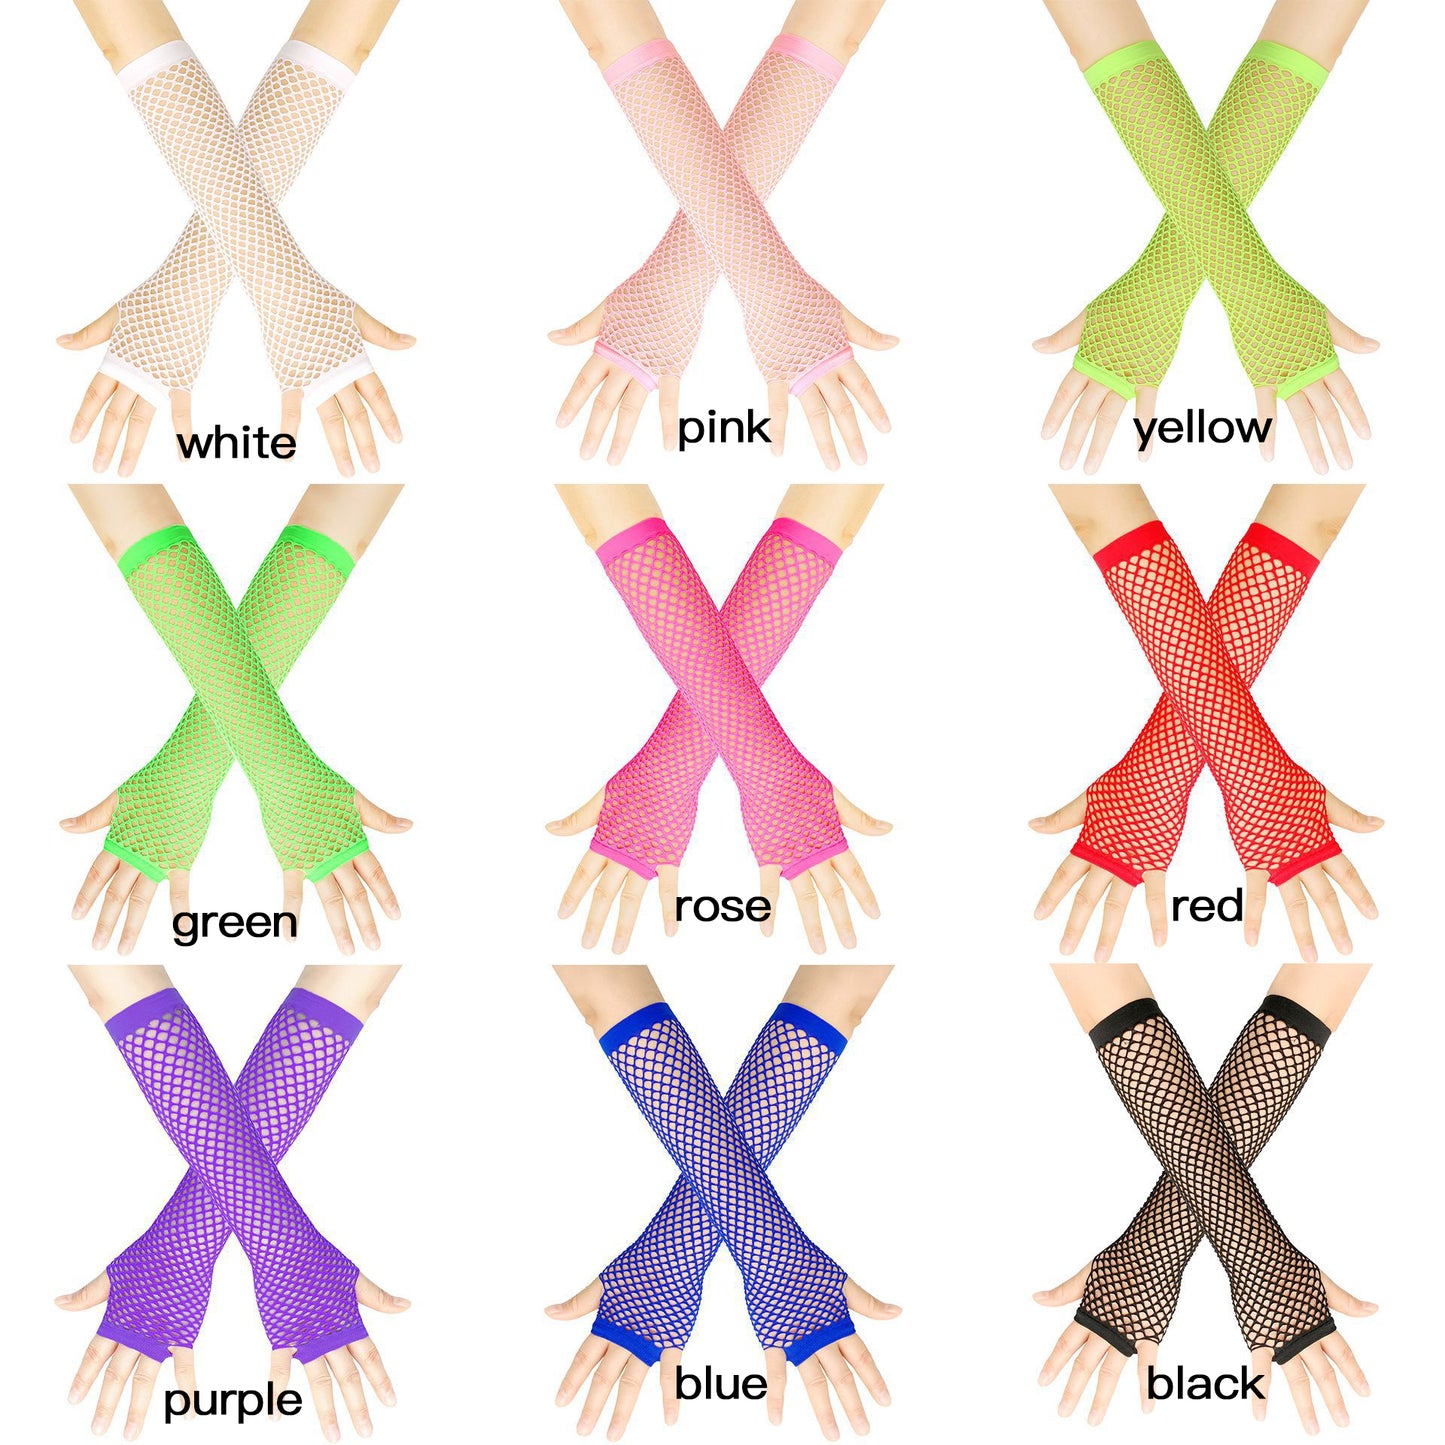 All Color Of Fishnet Fingerless Gloves - Femboy Fashion